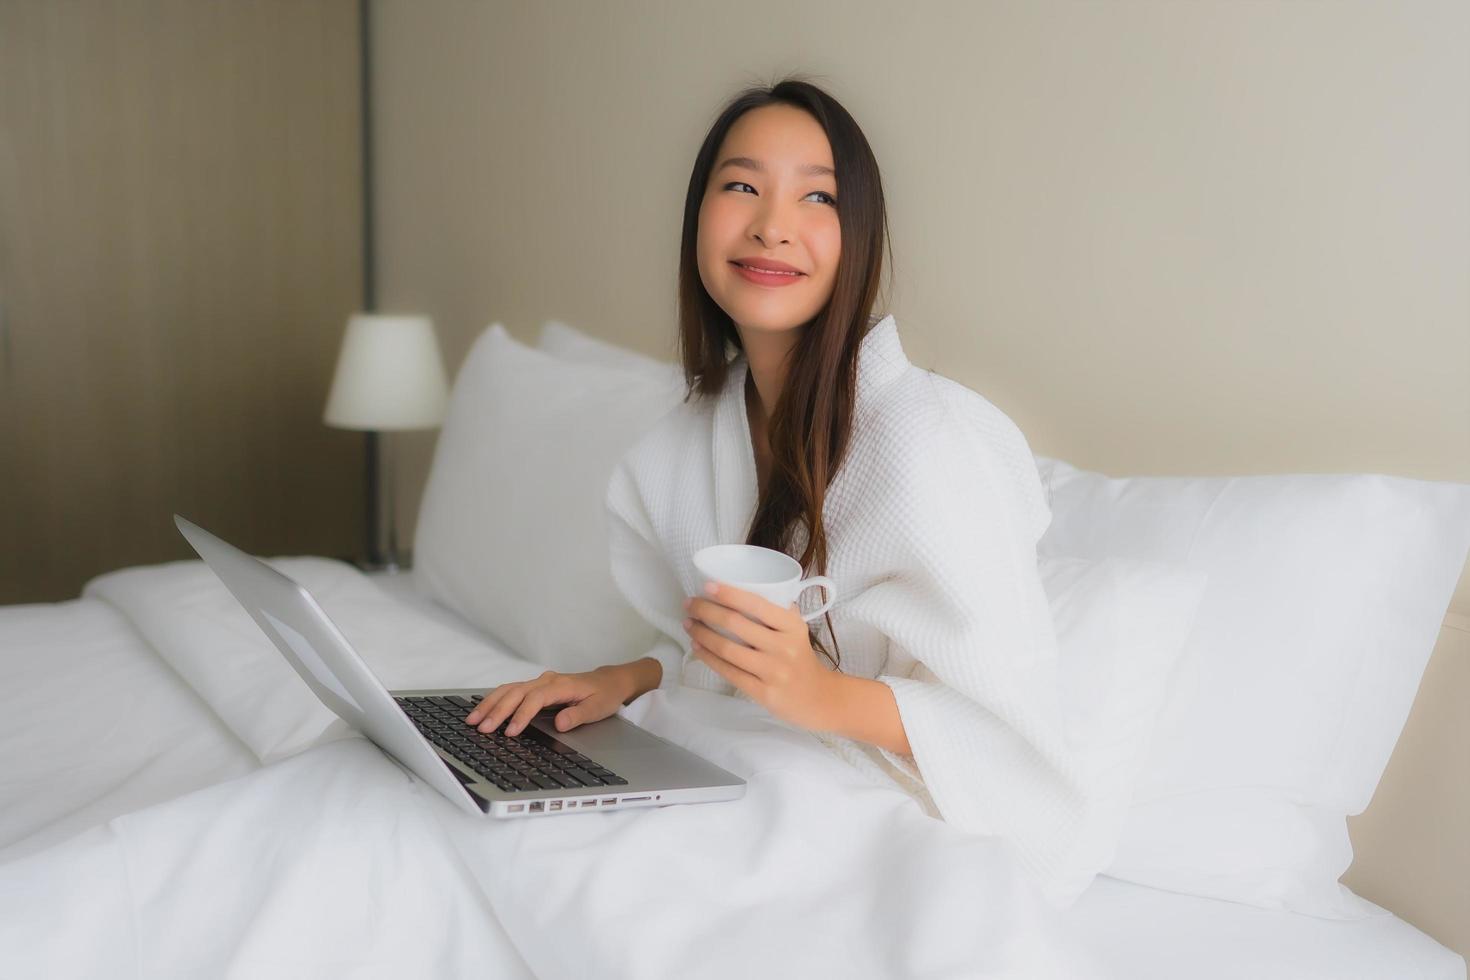 Portrait de belles jeunes femmes asiatiques avec une tasse de café et un ordinateur portable sur le lit photo